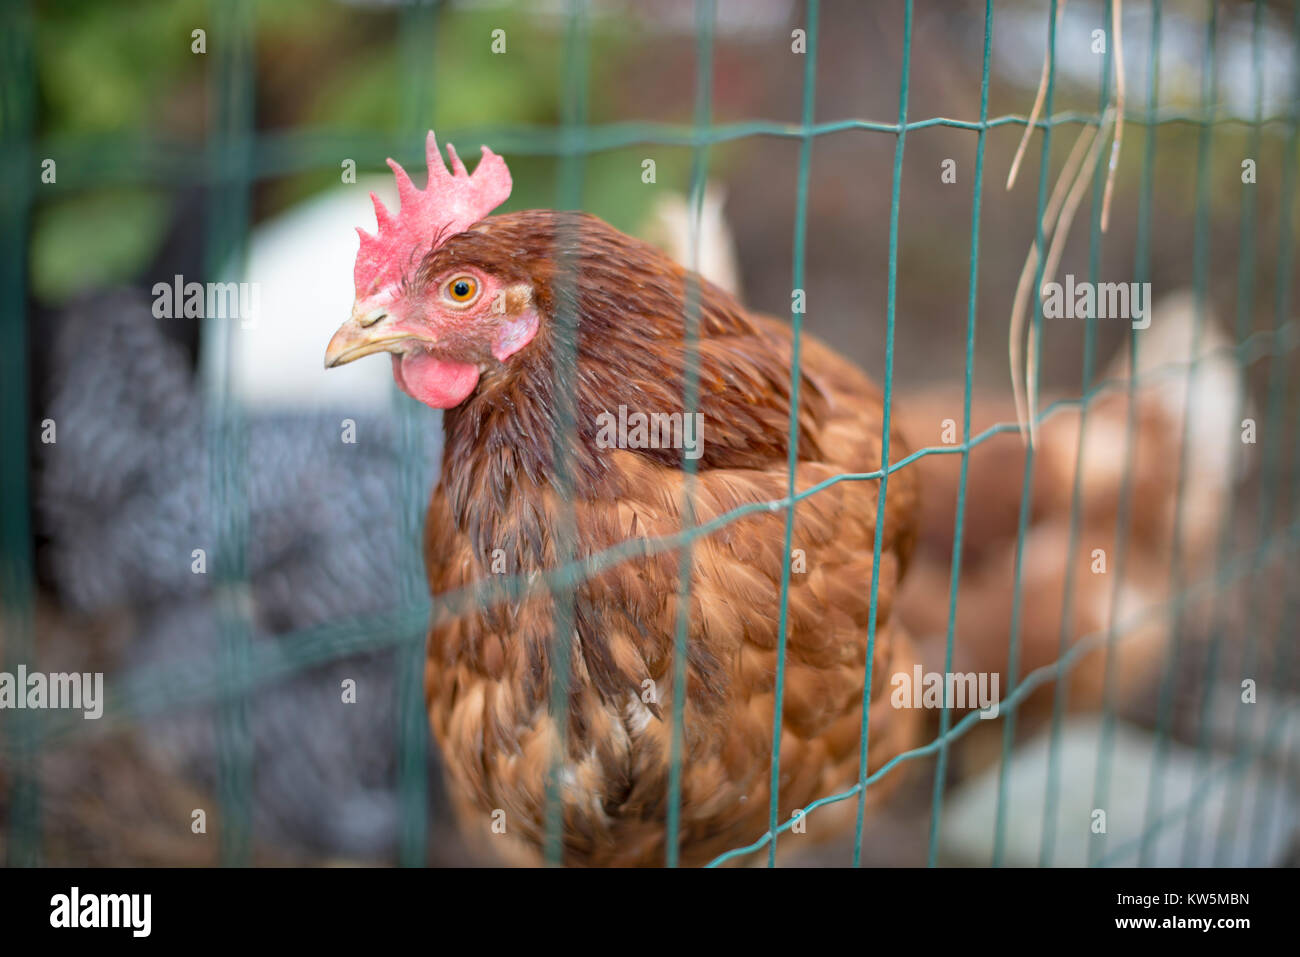 Un intervalo libre de pollo marrón mirando a la cámara a través de una valla de alambre con más pollos de varios colores de fondo Foto de stock